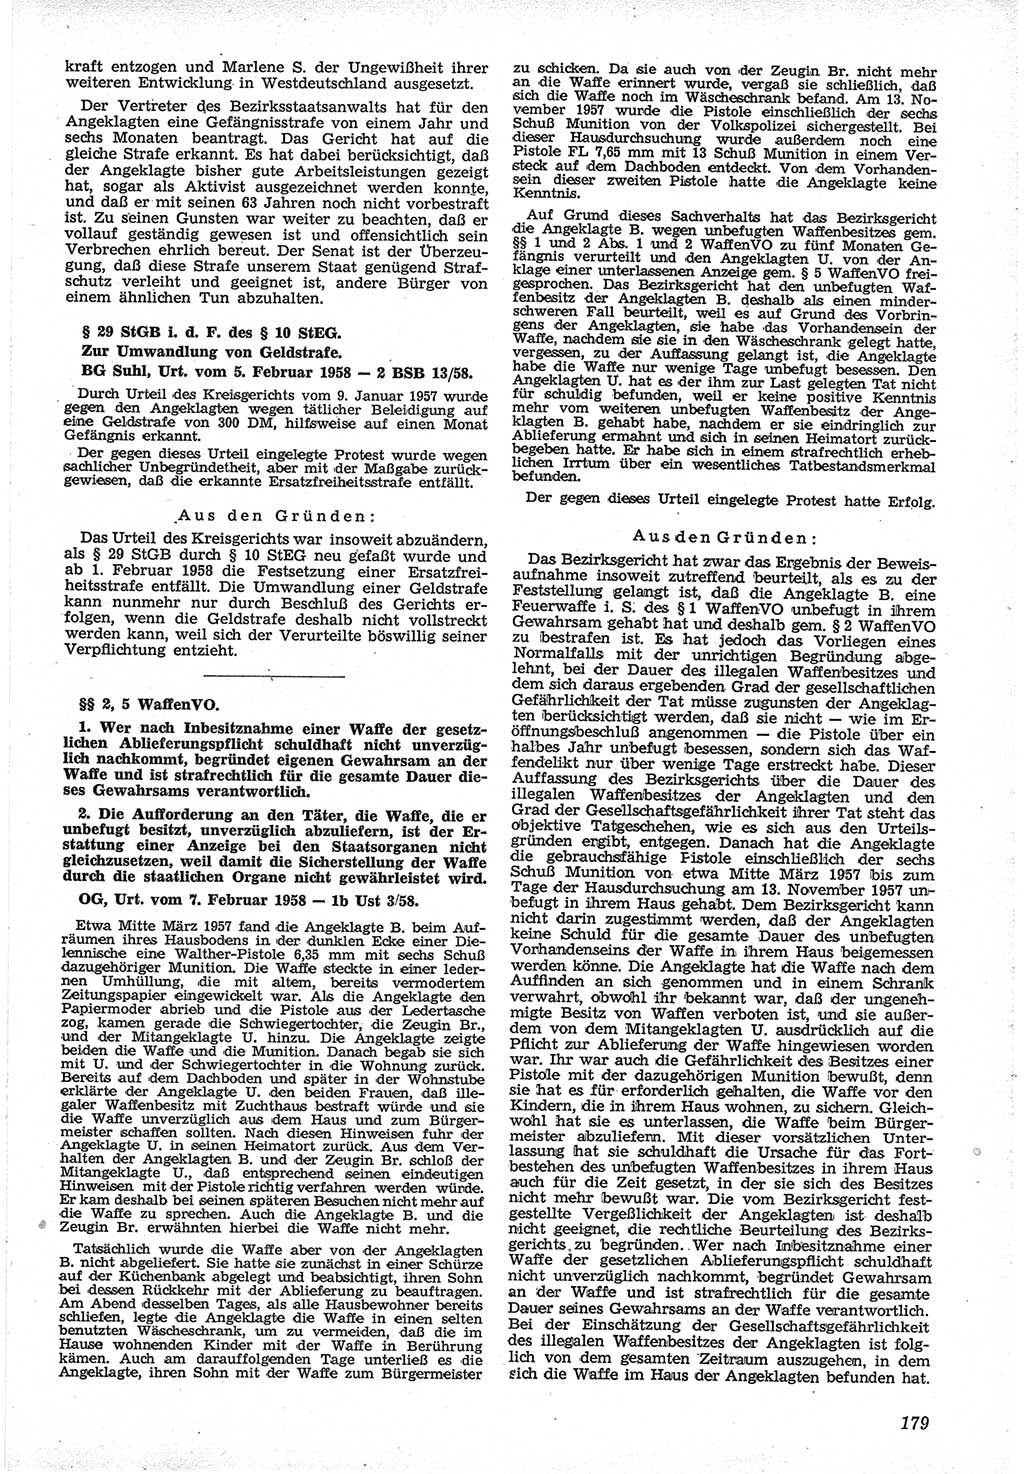 Neue Justiz (NJ), Zeitschrift für Recht und Rechtswissenschaft [Deutsche Demokratische Republik (DDR)], 12. Jahrgang 1958, Seite 179 (NJ DDR 1958, S. 179)